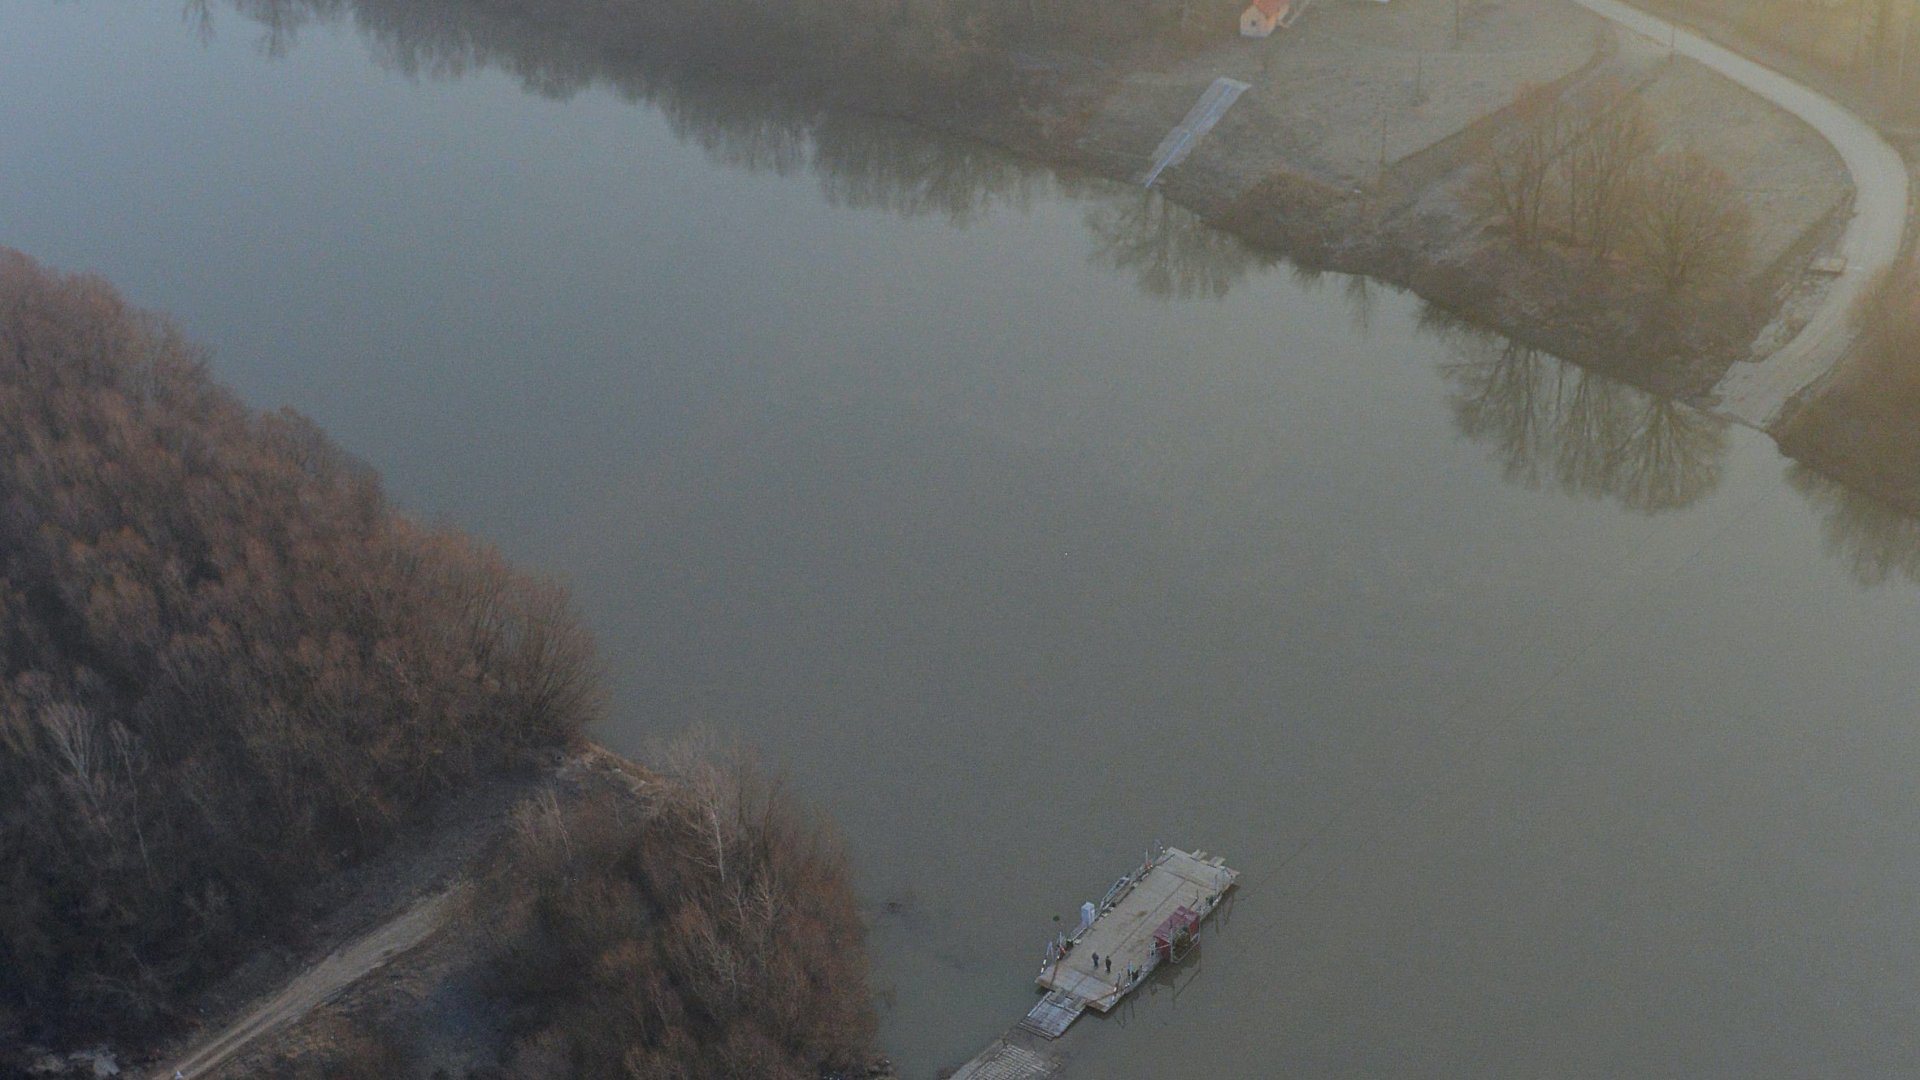 Komp közlekedik a Tiszán Tiszamogyorós és Lónya között 2015. március 10-én